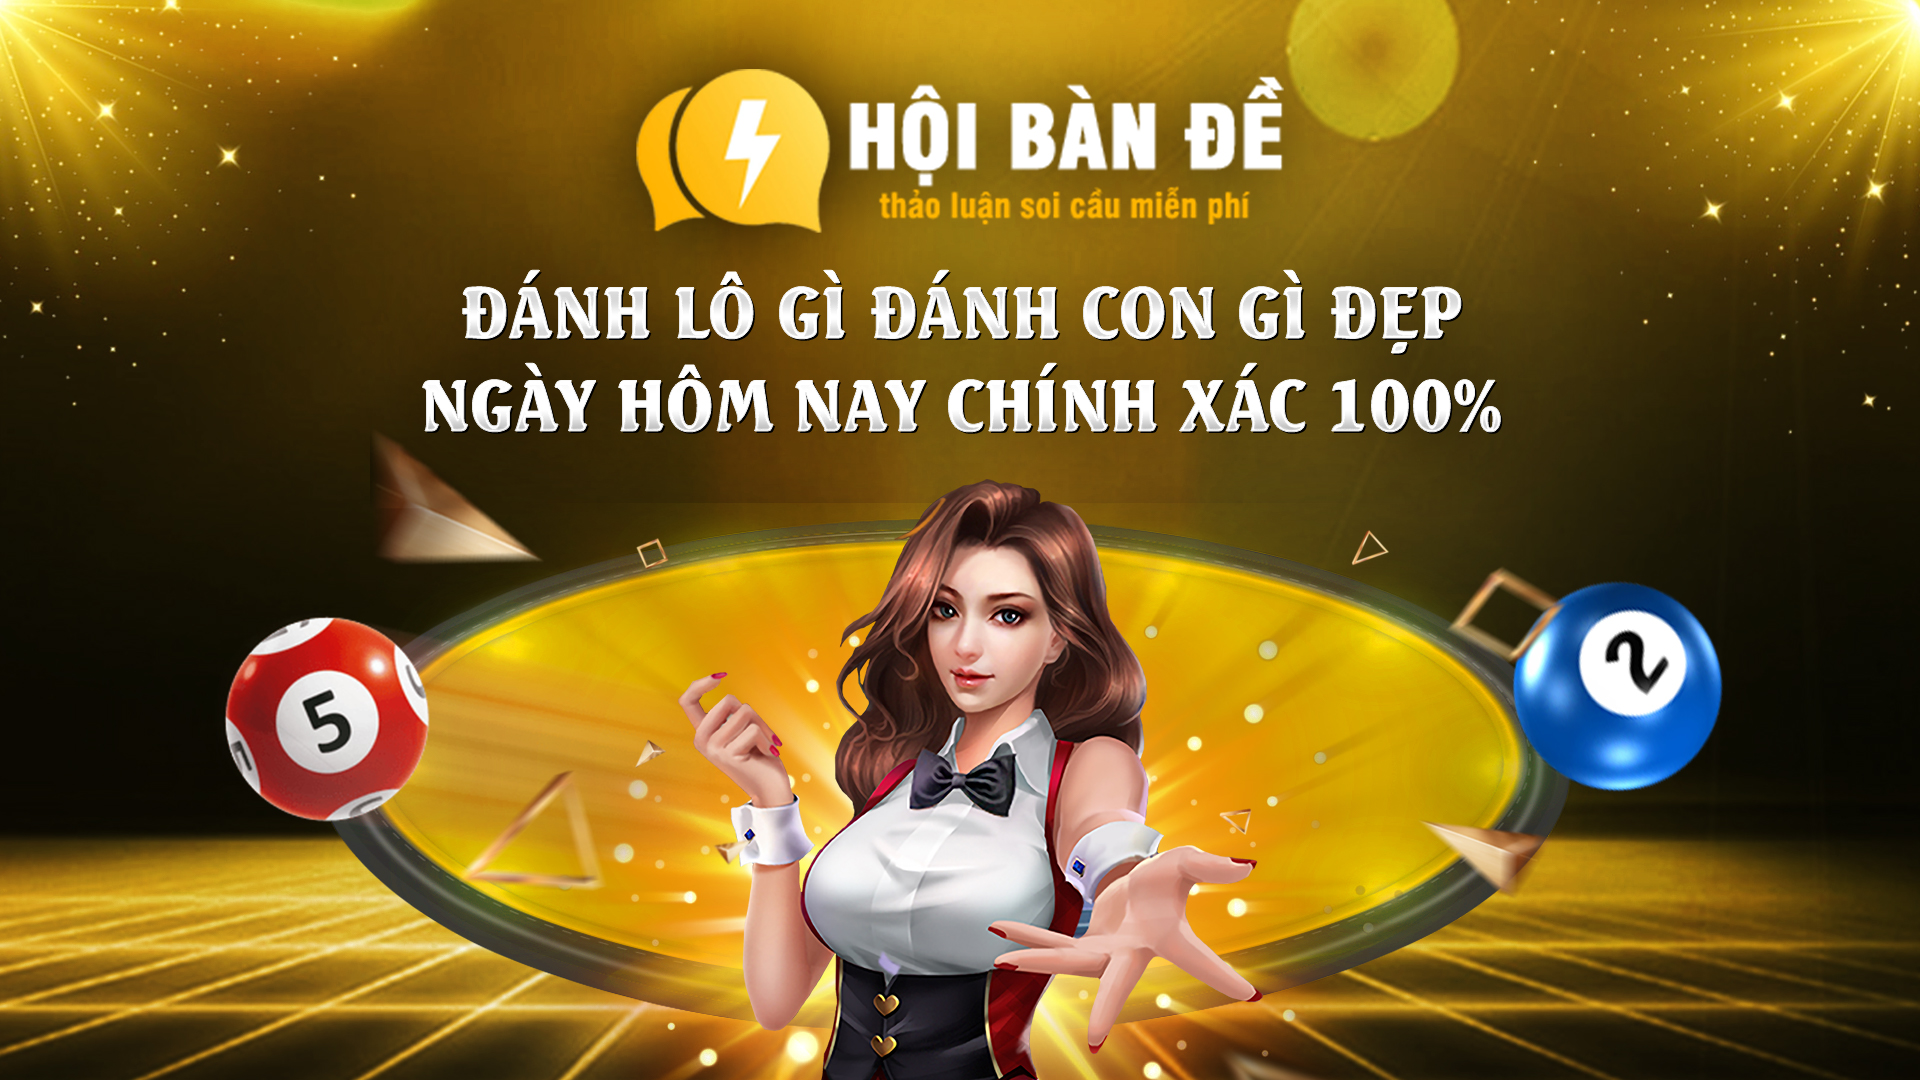 Danh Lo Gi Danh Con Gi Dep Ngay Hom Nay Chinh Xac 100